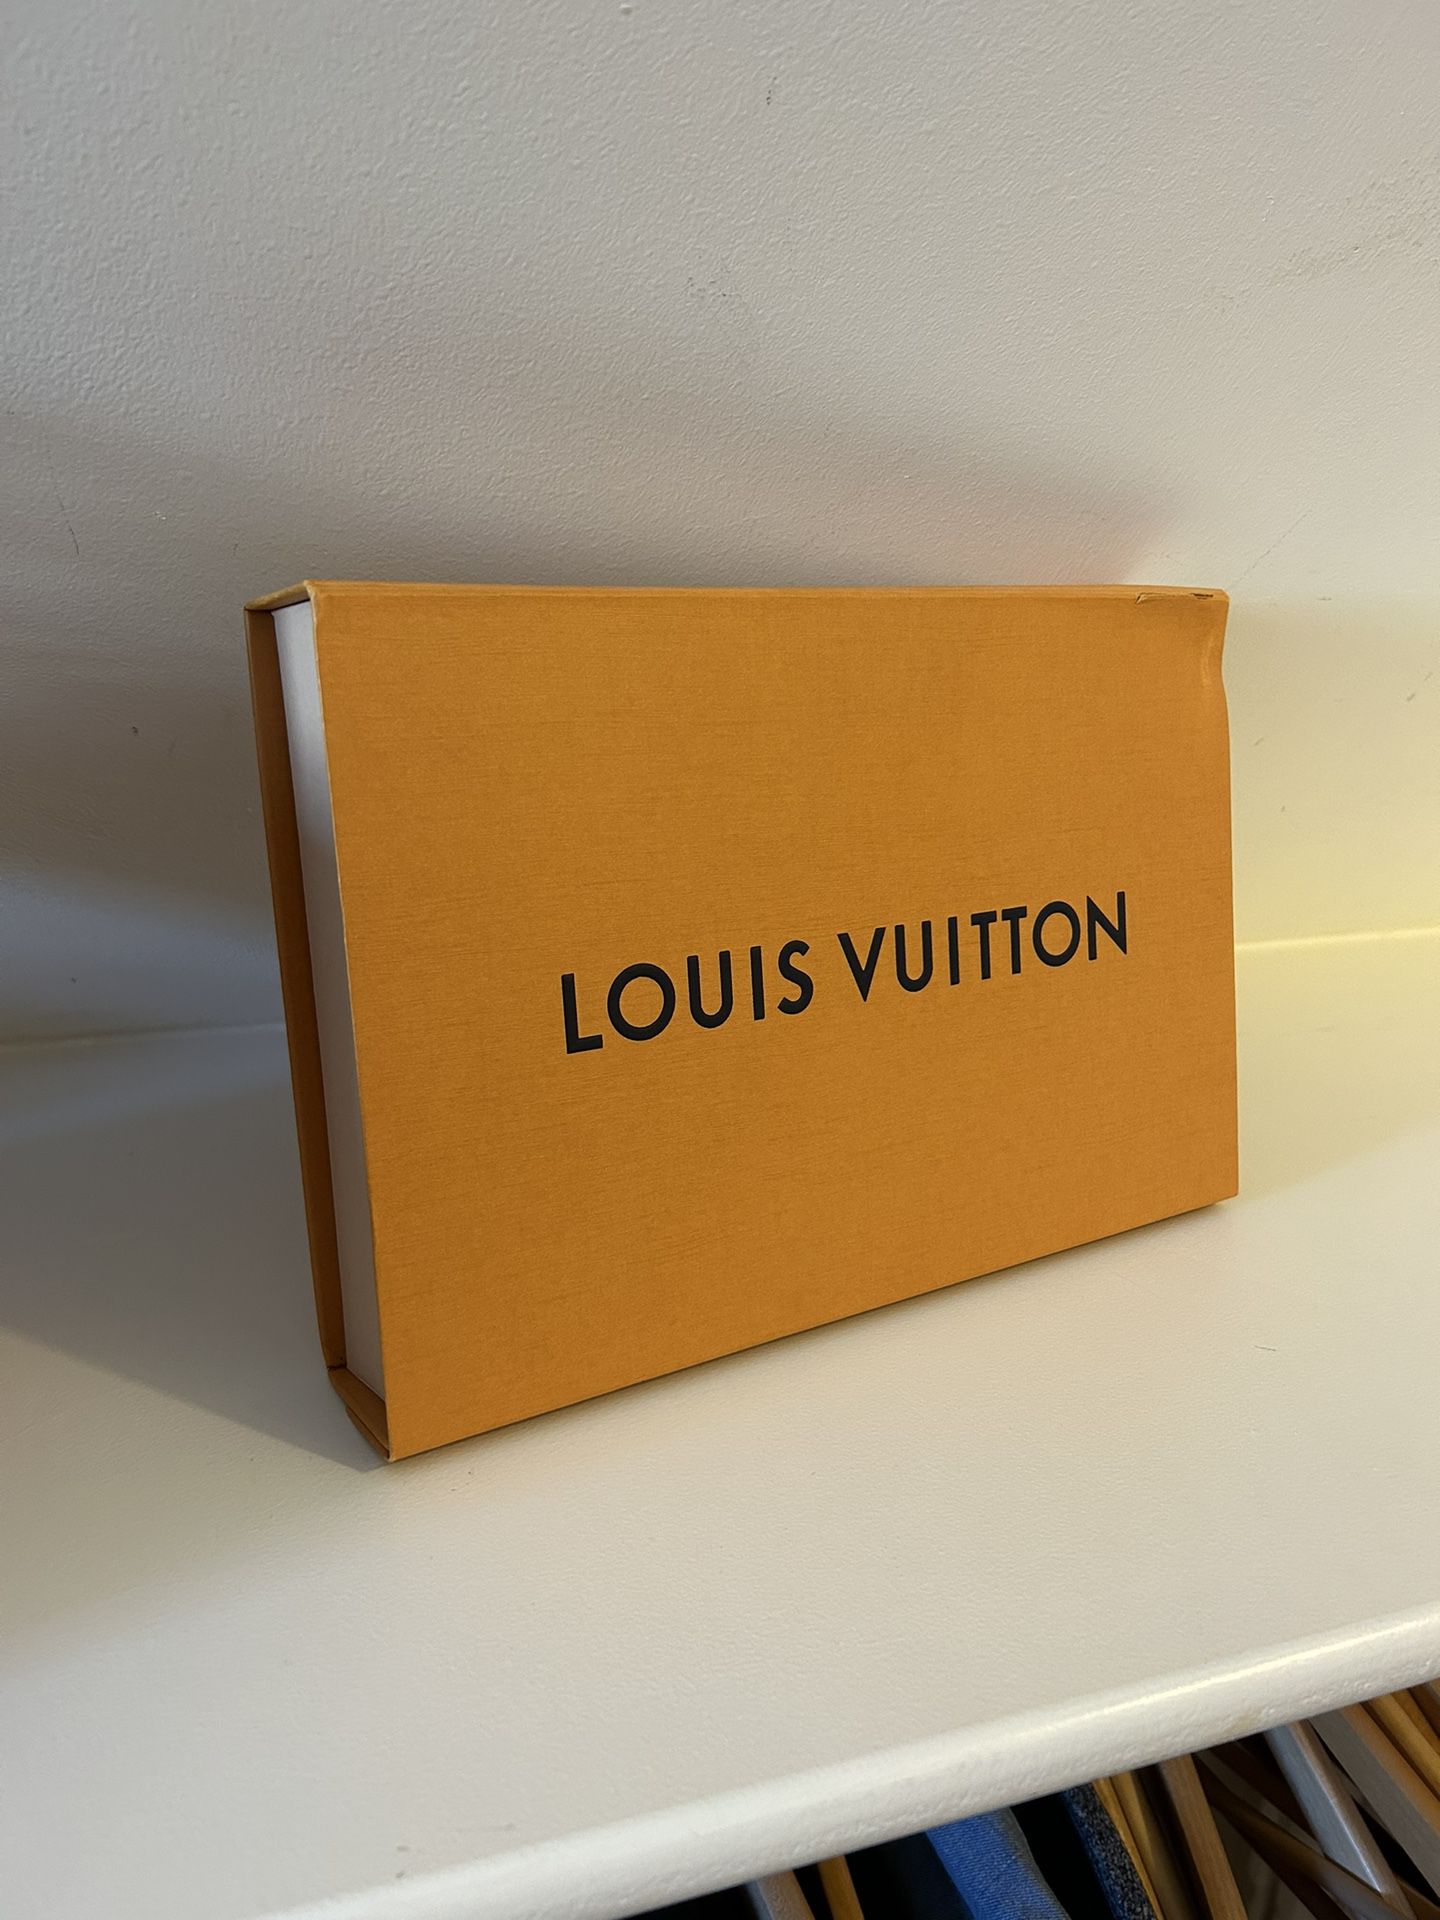 Authentic Louis Vuitton Bag Box 